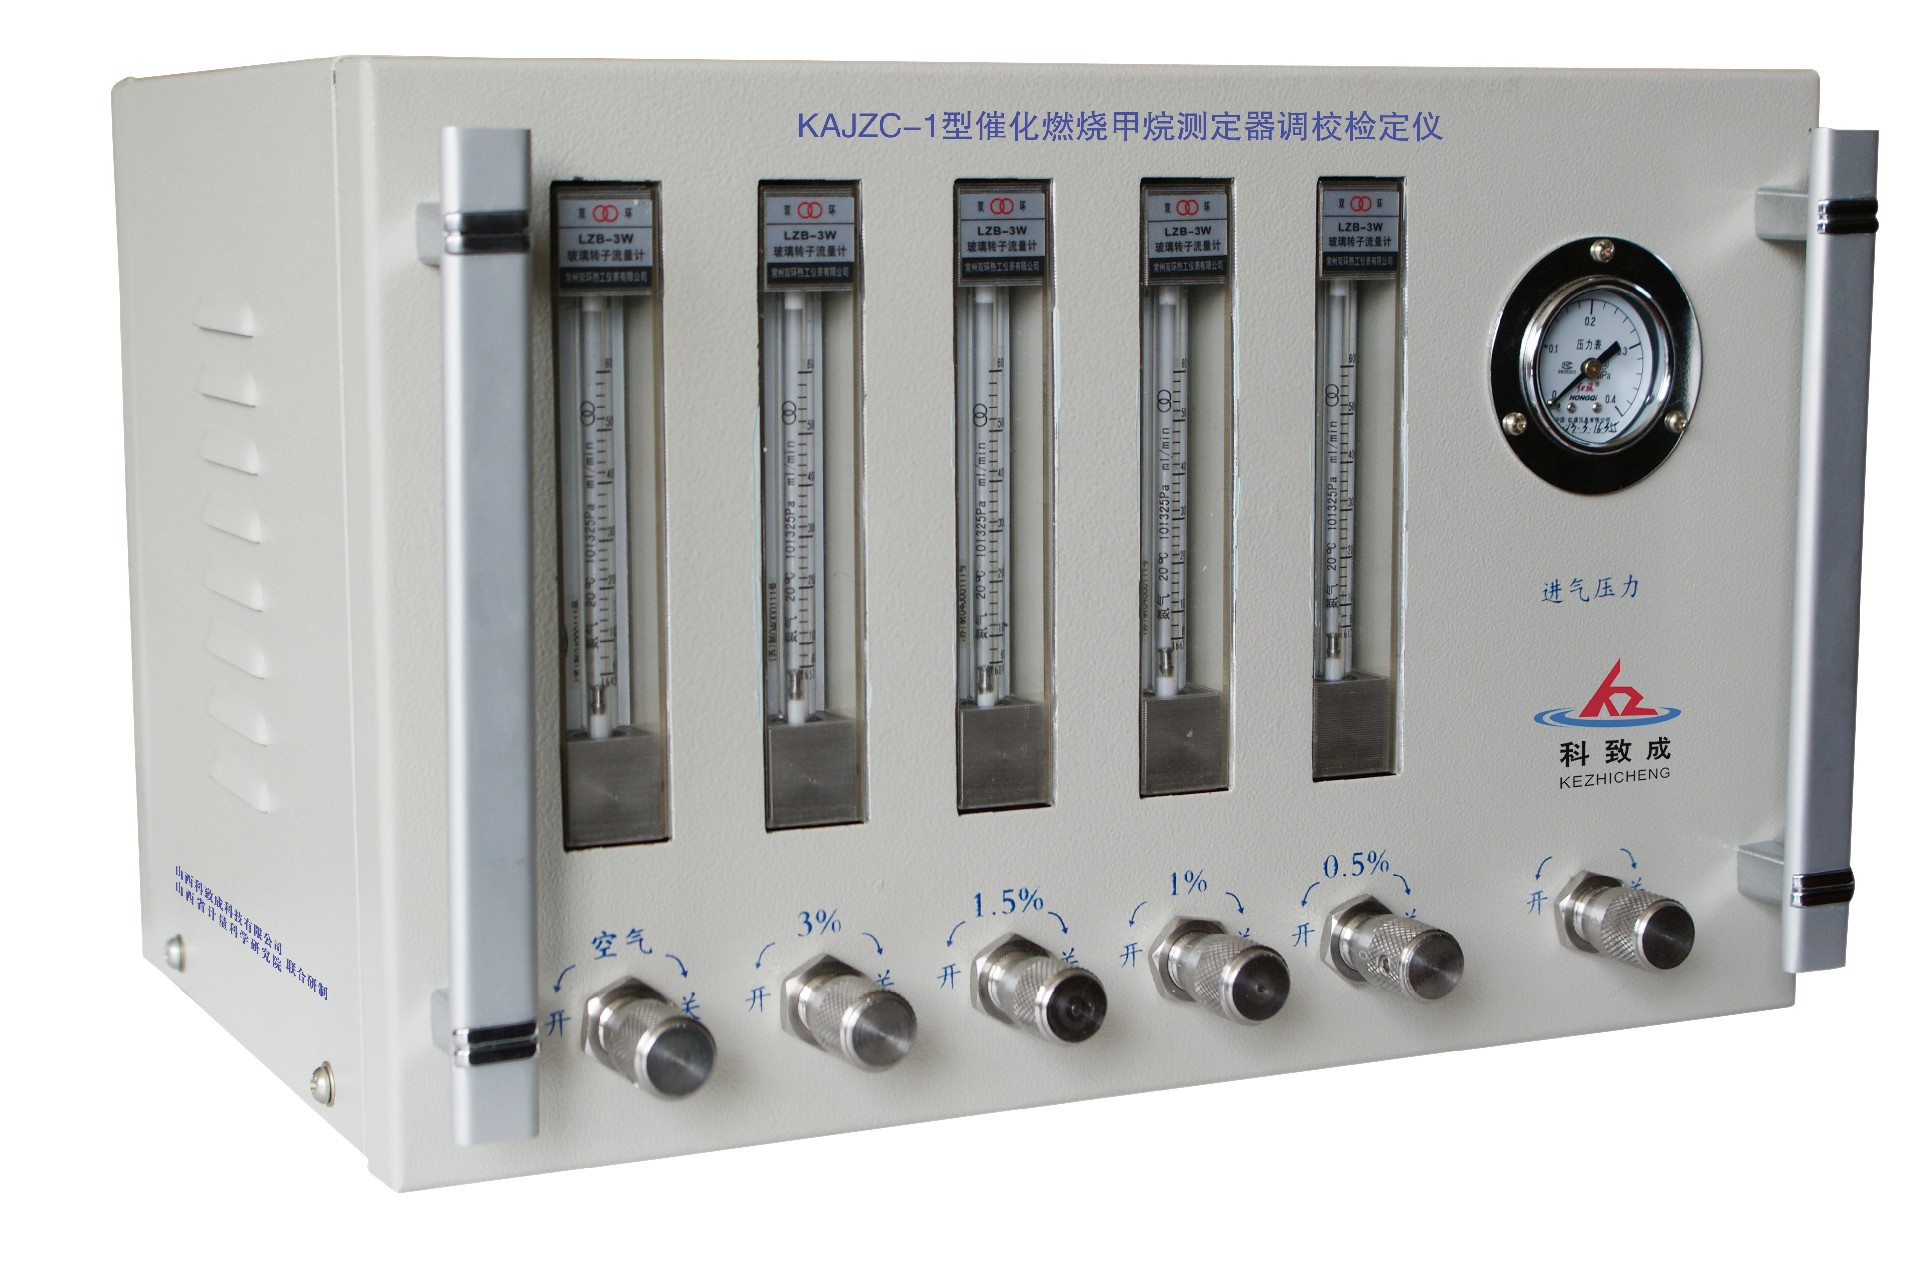 沧州KAJZC-1型催化燃烧甲烷测定器调校检定仪